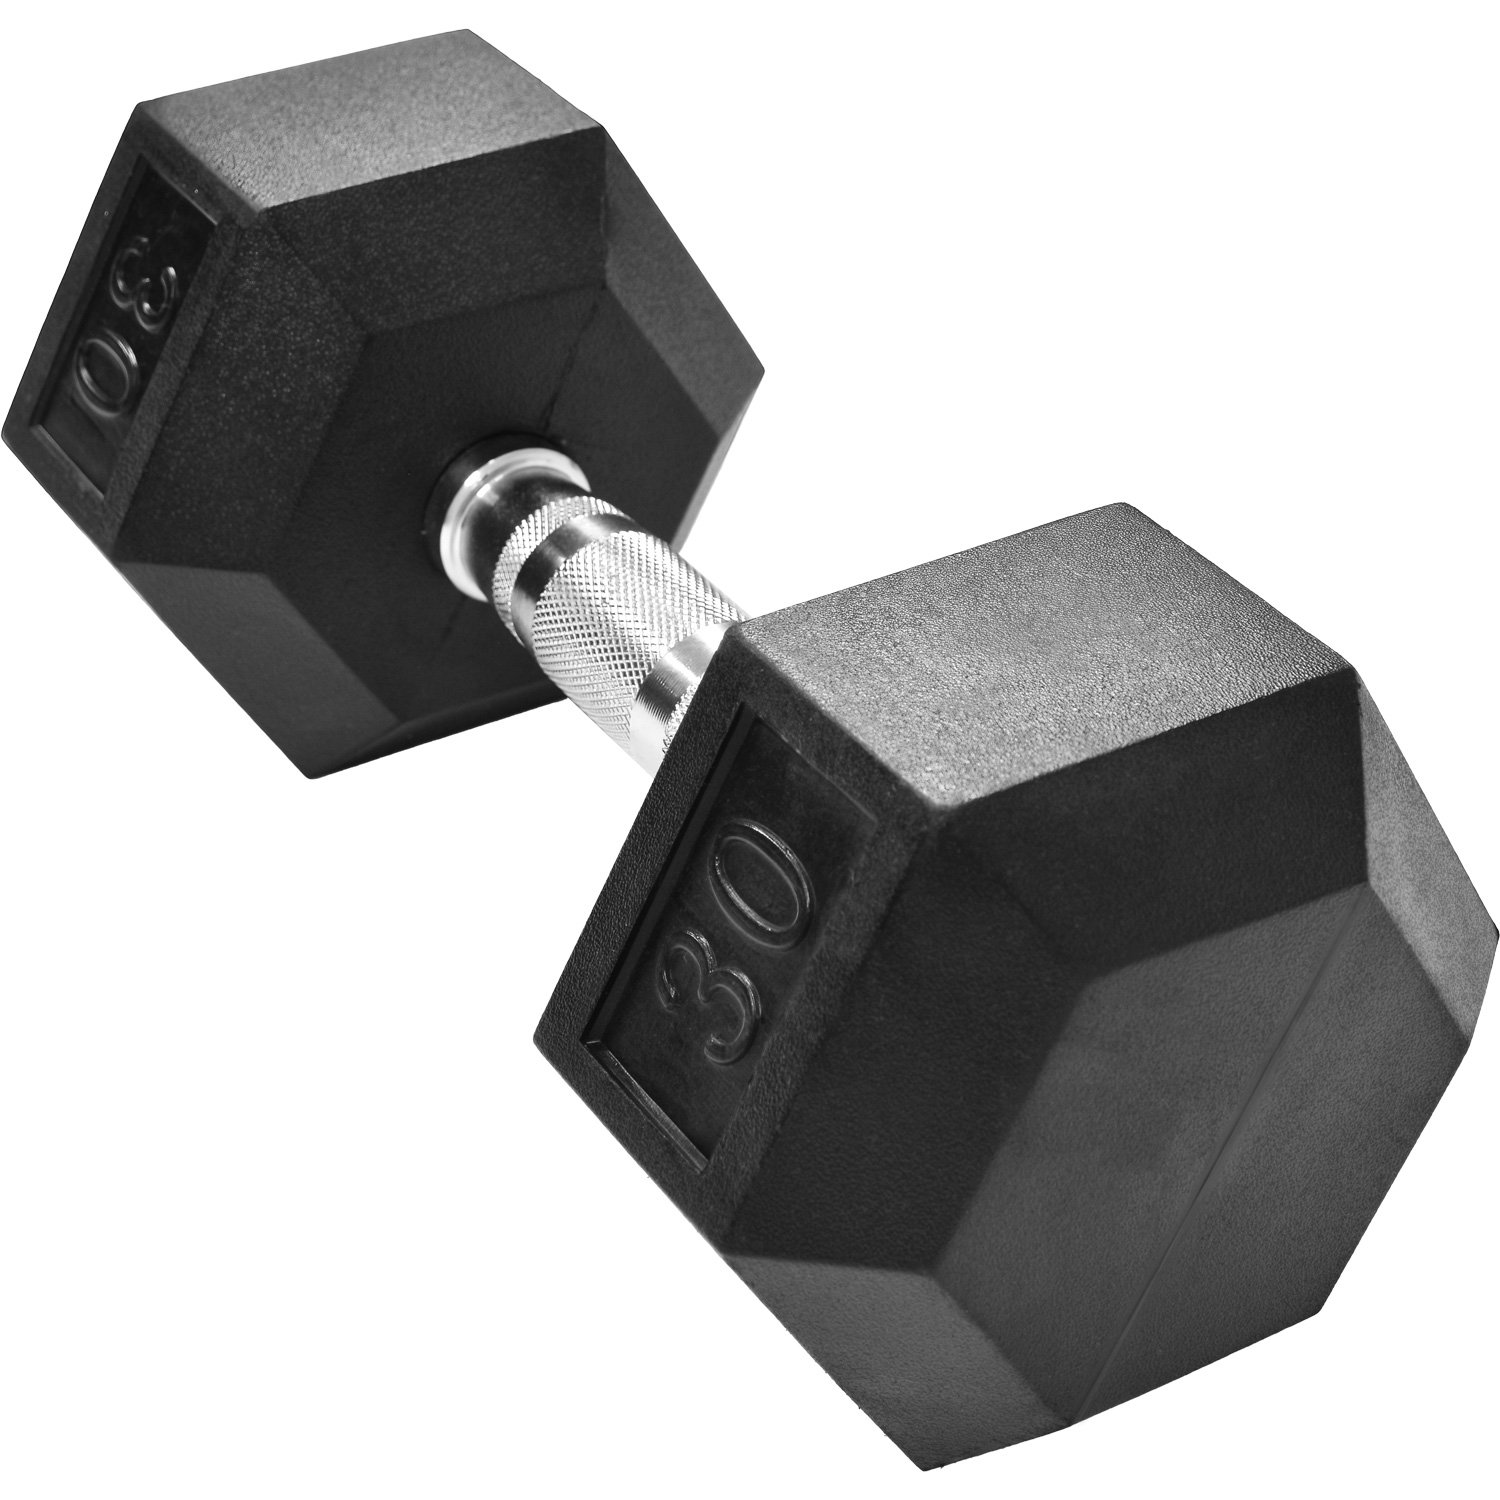  Zxb-shop Mancuernas hexagonales para levantamiento de pesas,  equipo de fitness para el hogar, 22.0 lbs, un par = 11.0 lbs, 2 mancuernas  universales, pesas de mano para mujeres : Deportes y